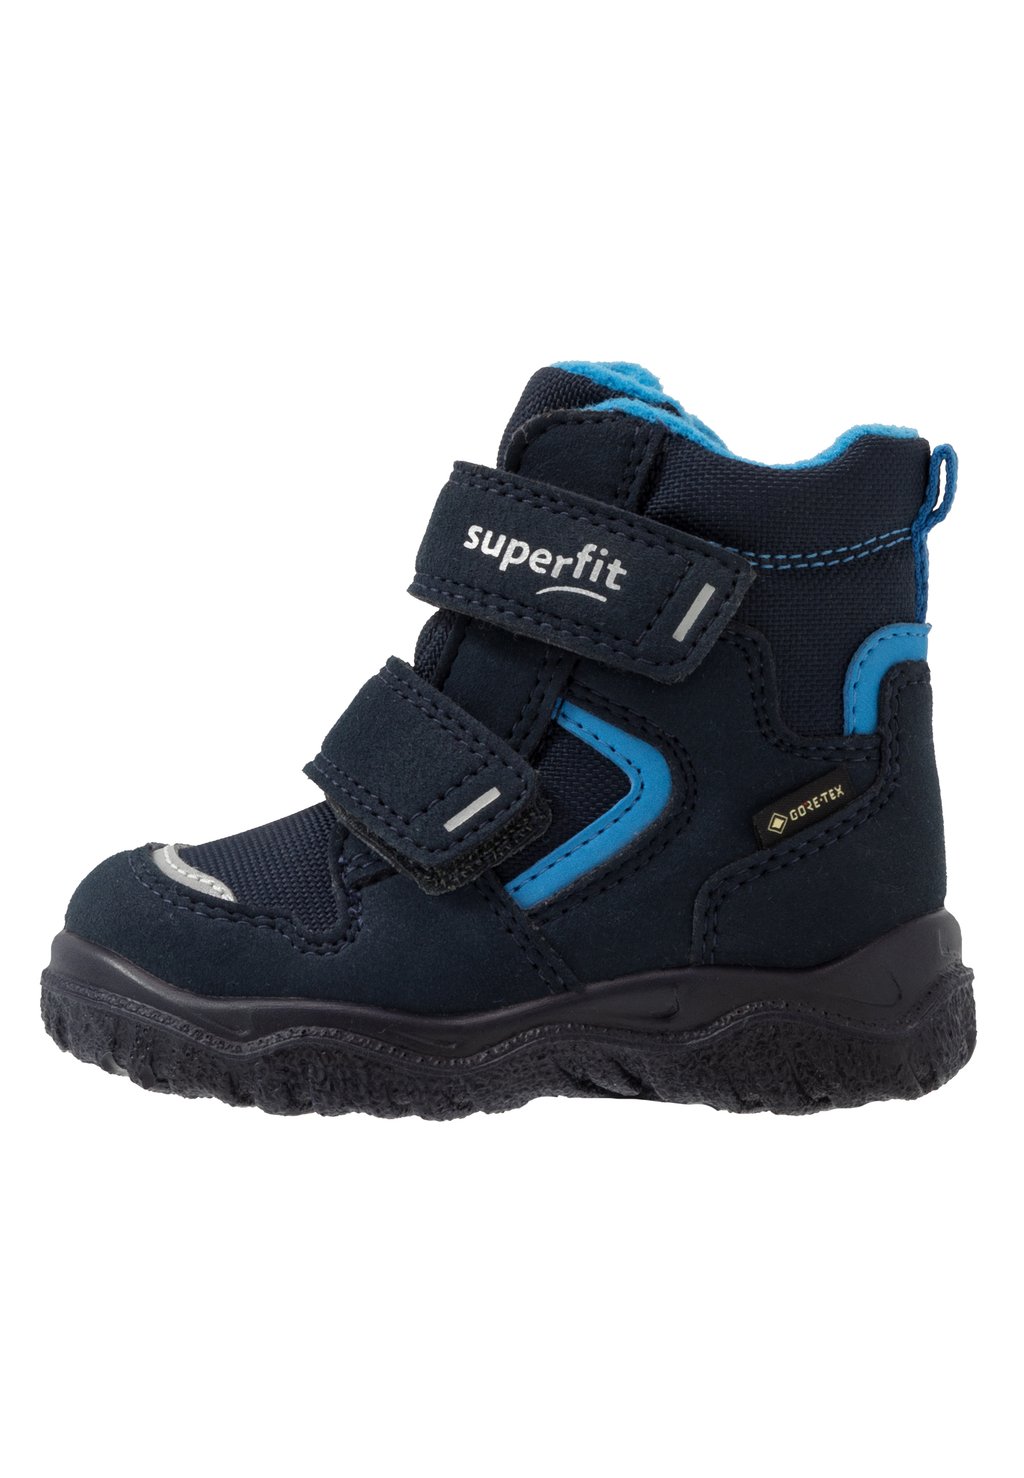 Зимние ботинки/зимние ботинки HUSKY Superfit, цвет blau